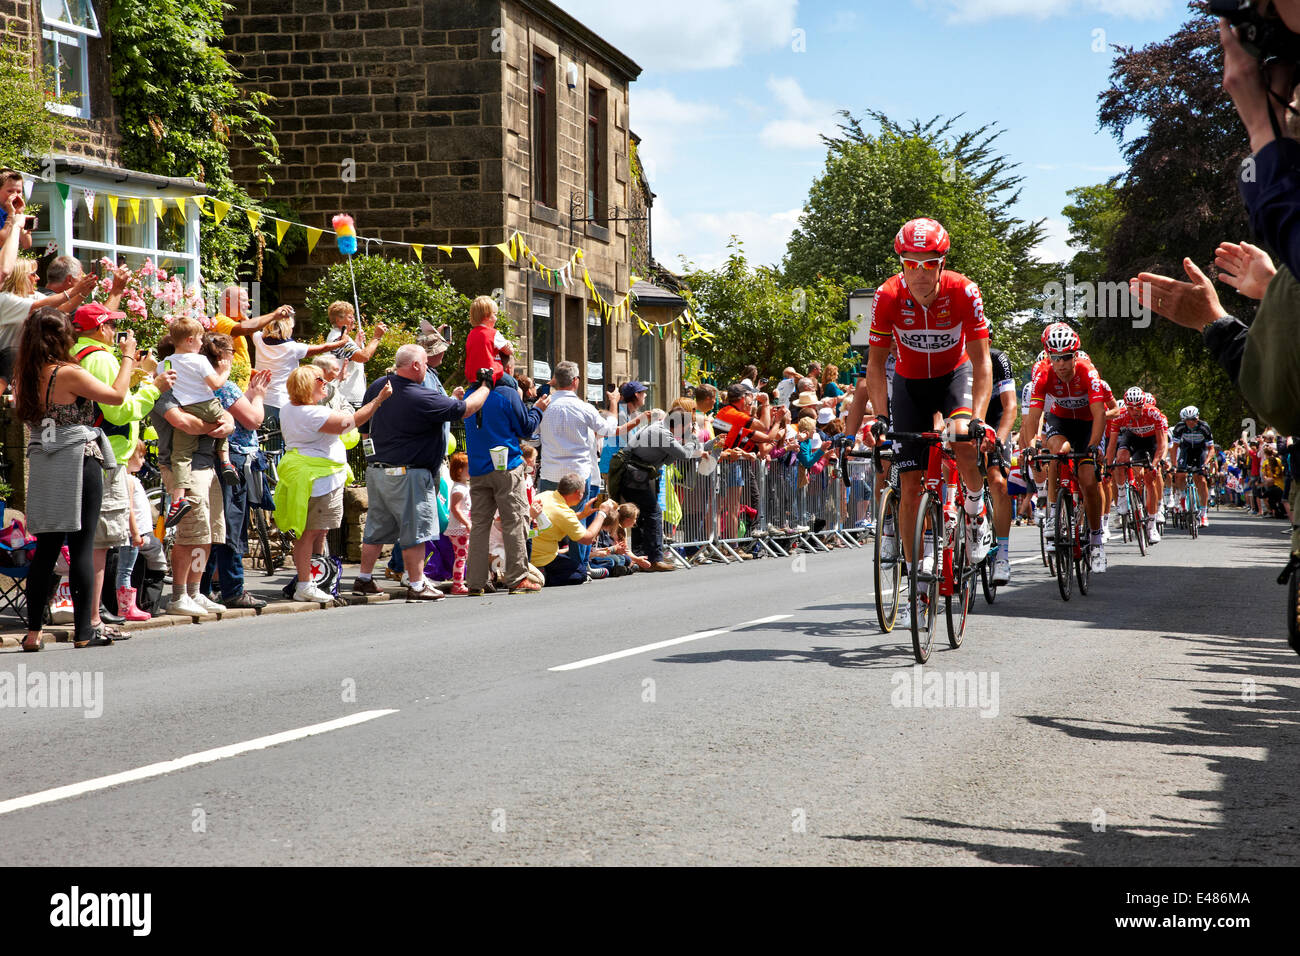 Addingham, Yorkshire. Del 5 de julio de 2014. Los ciclistas en la primera etapa del Tour de Francia pasan a través de la aldea de Yorkshire Addingham, con ovaciones de las multitudes y del sol. Crédito: Christina Bollen/Alamy Live News Foto de stock